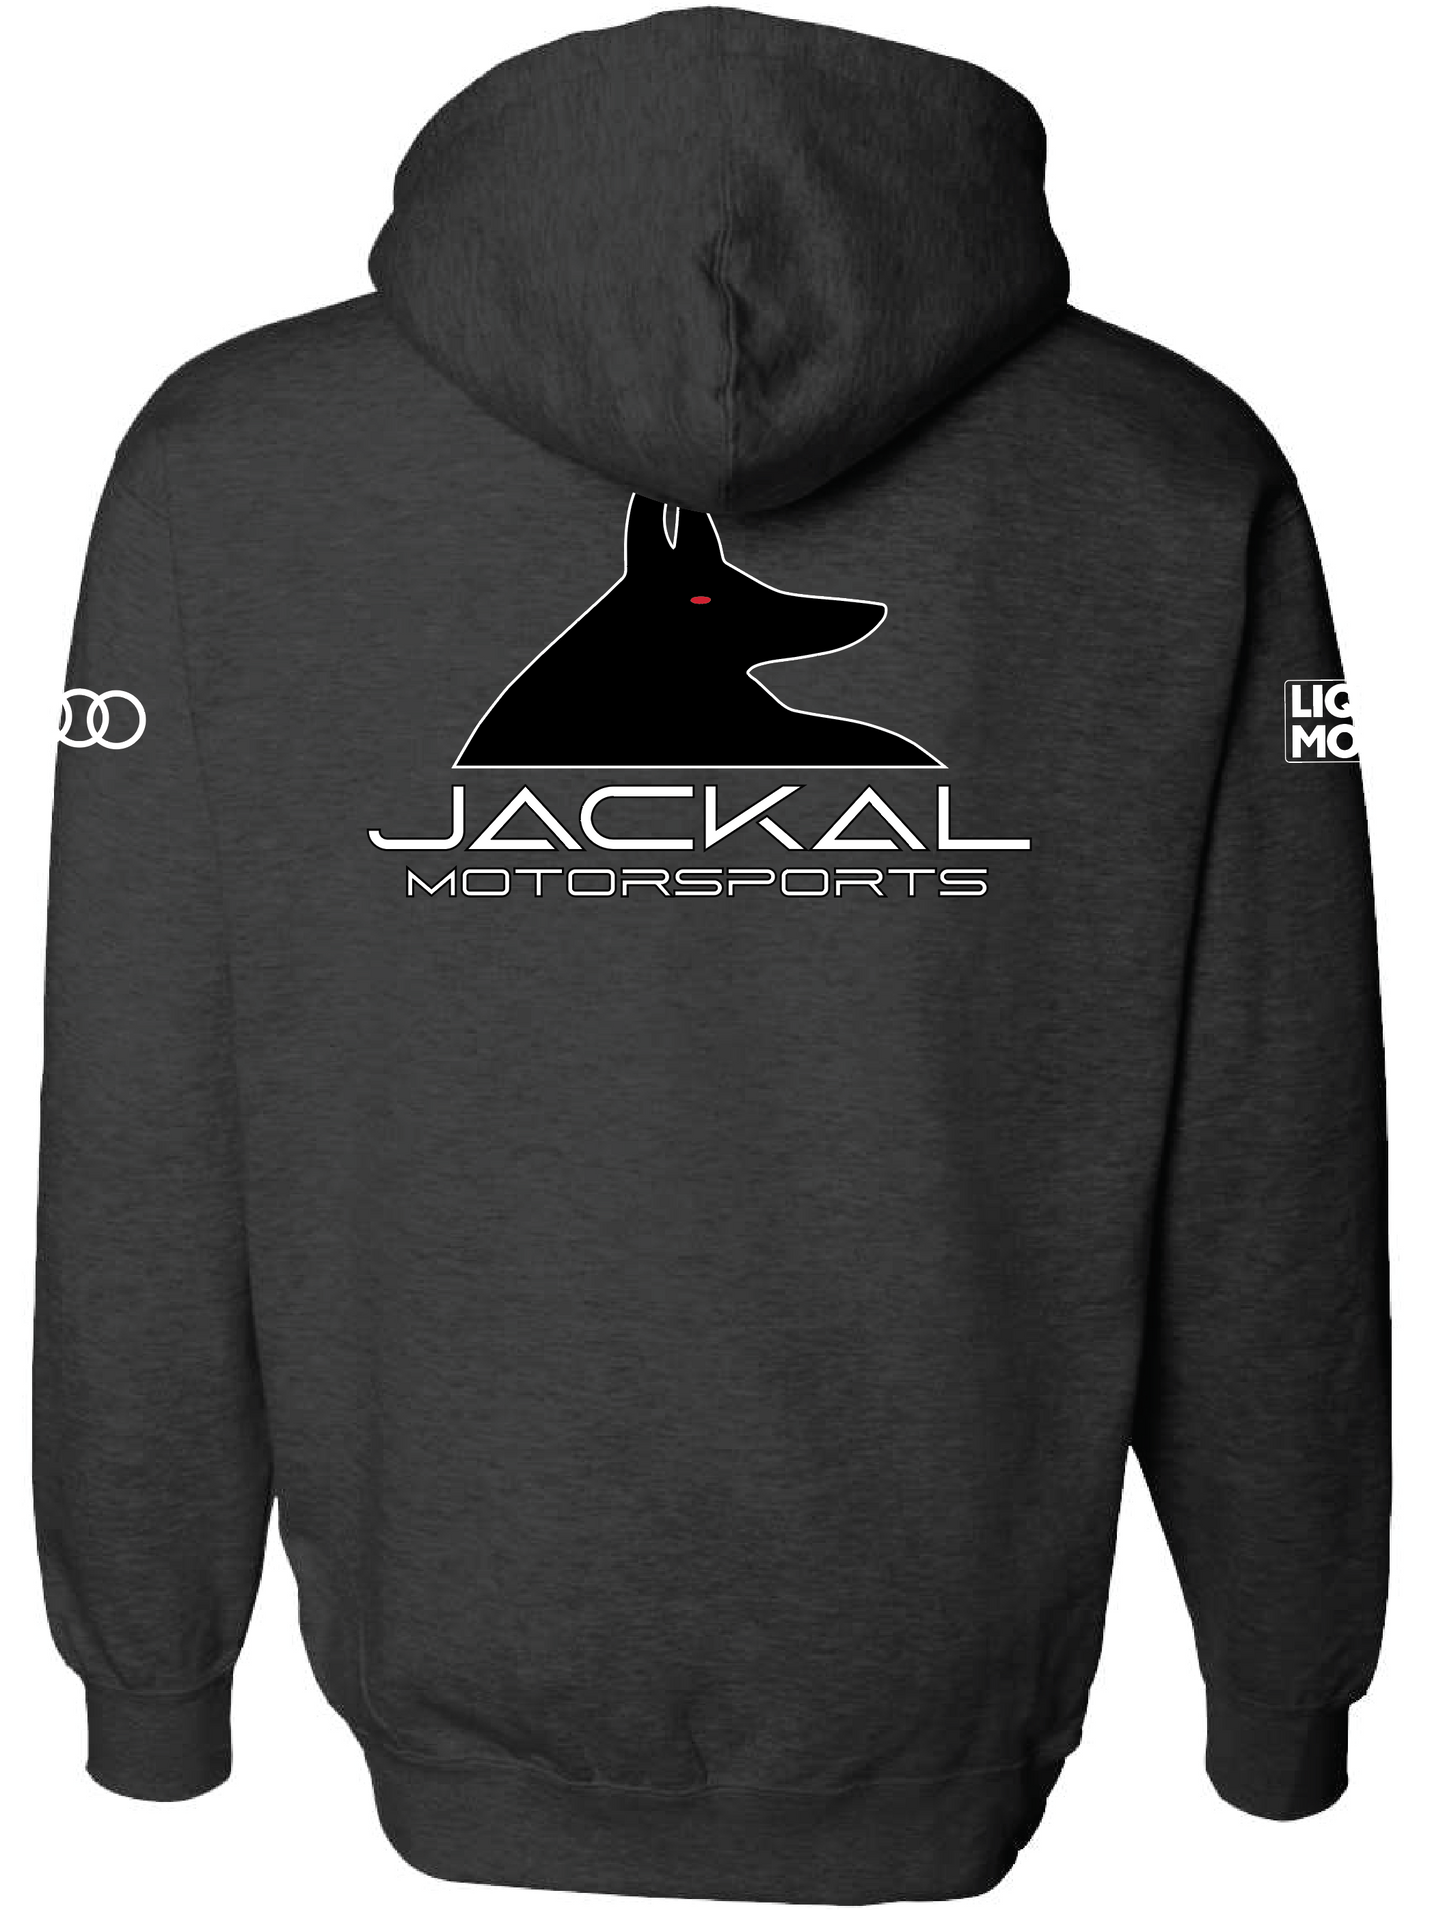 Jackal Motorsports Hoodie